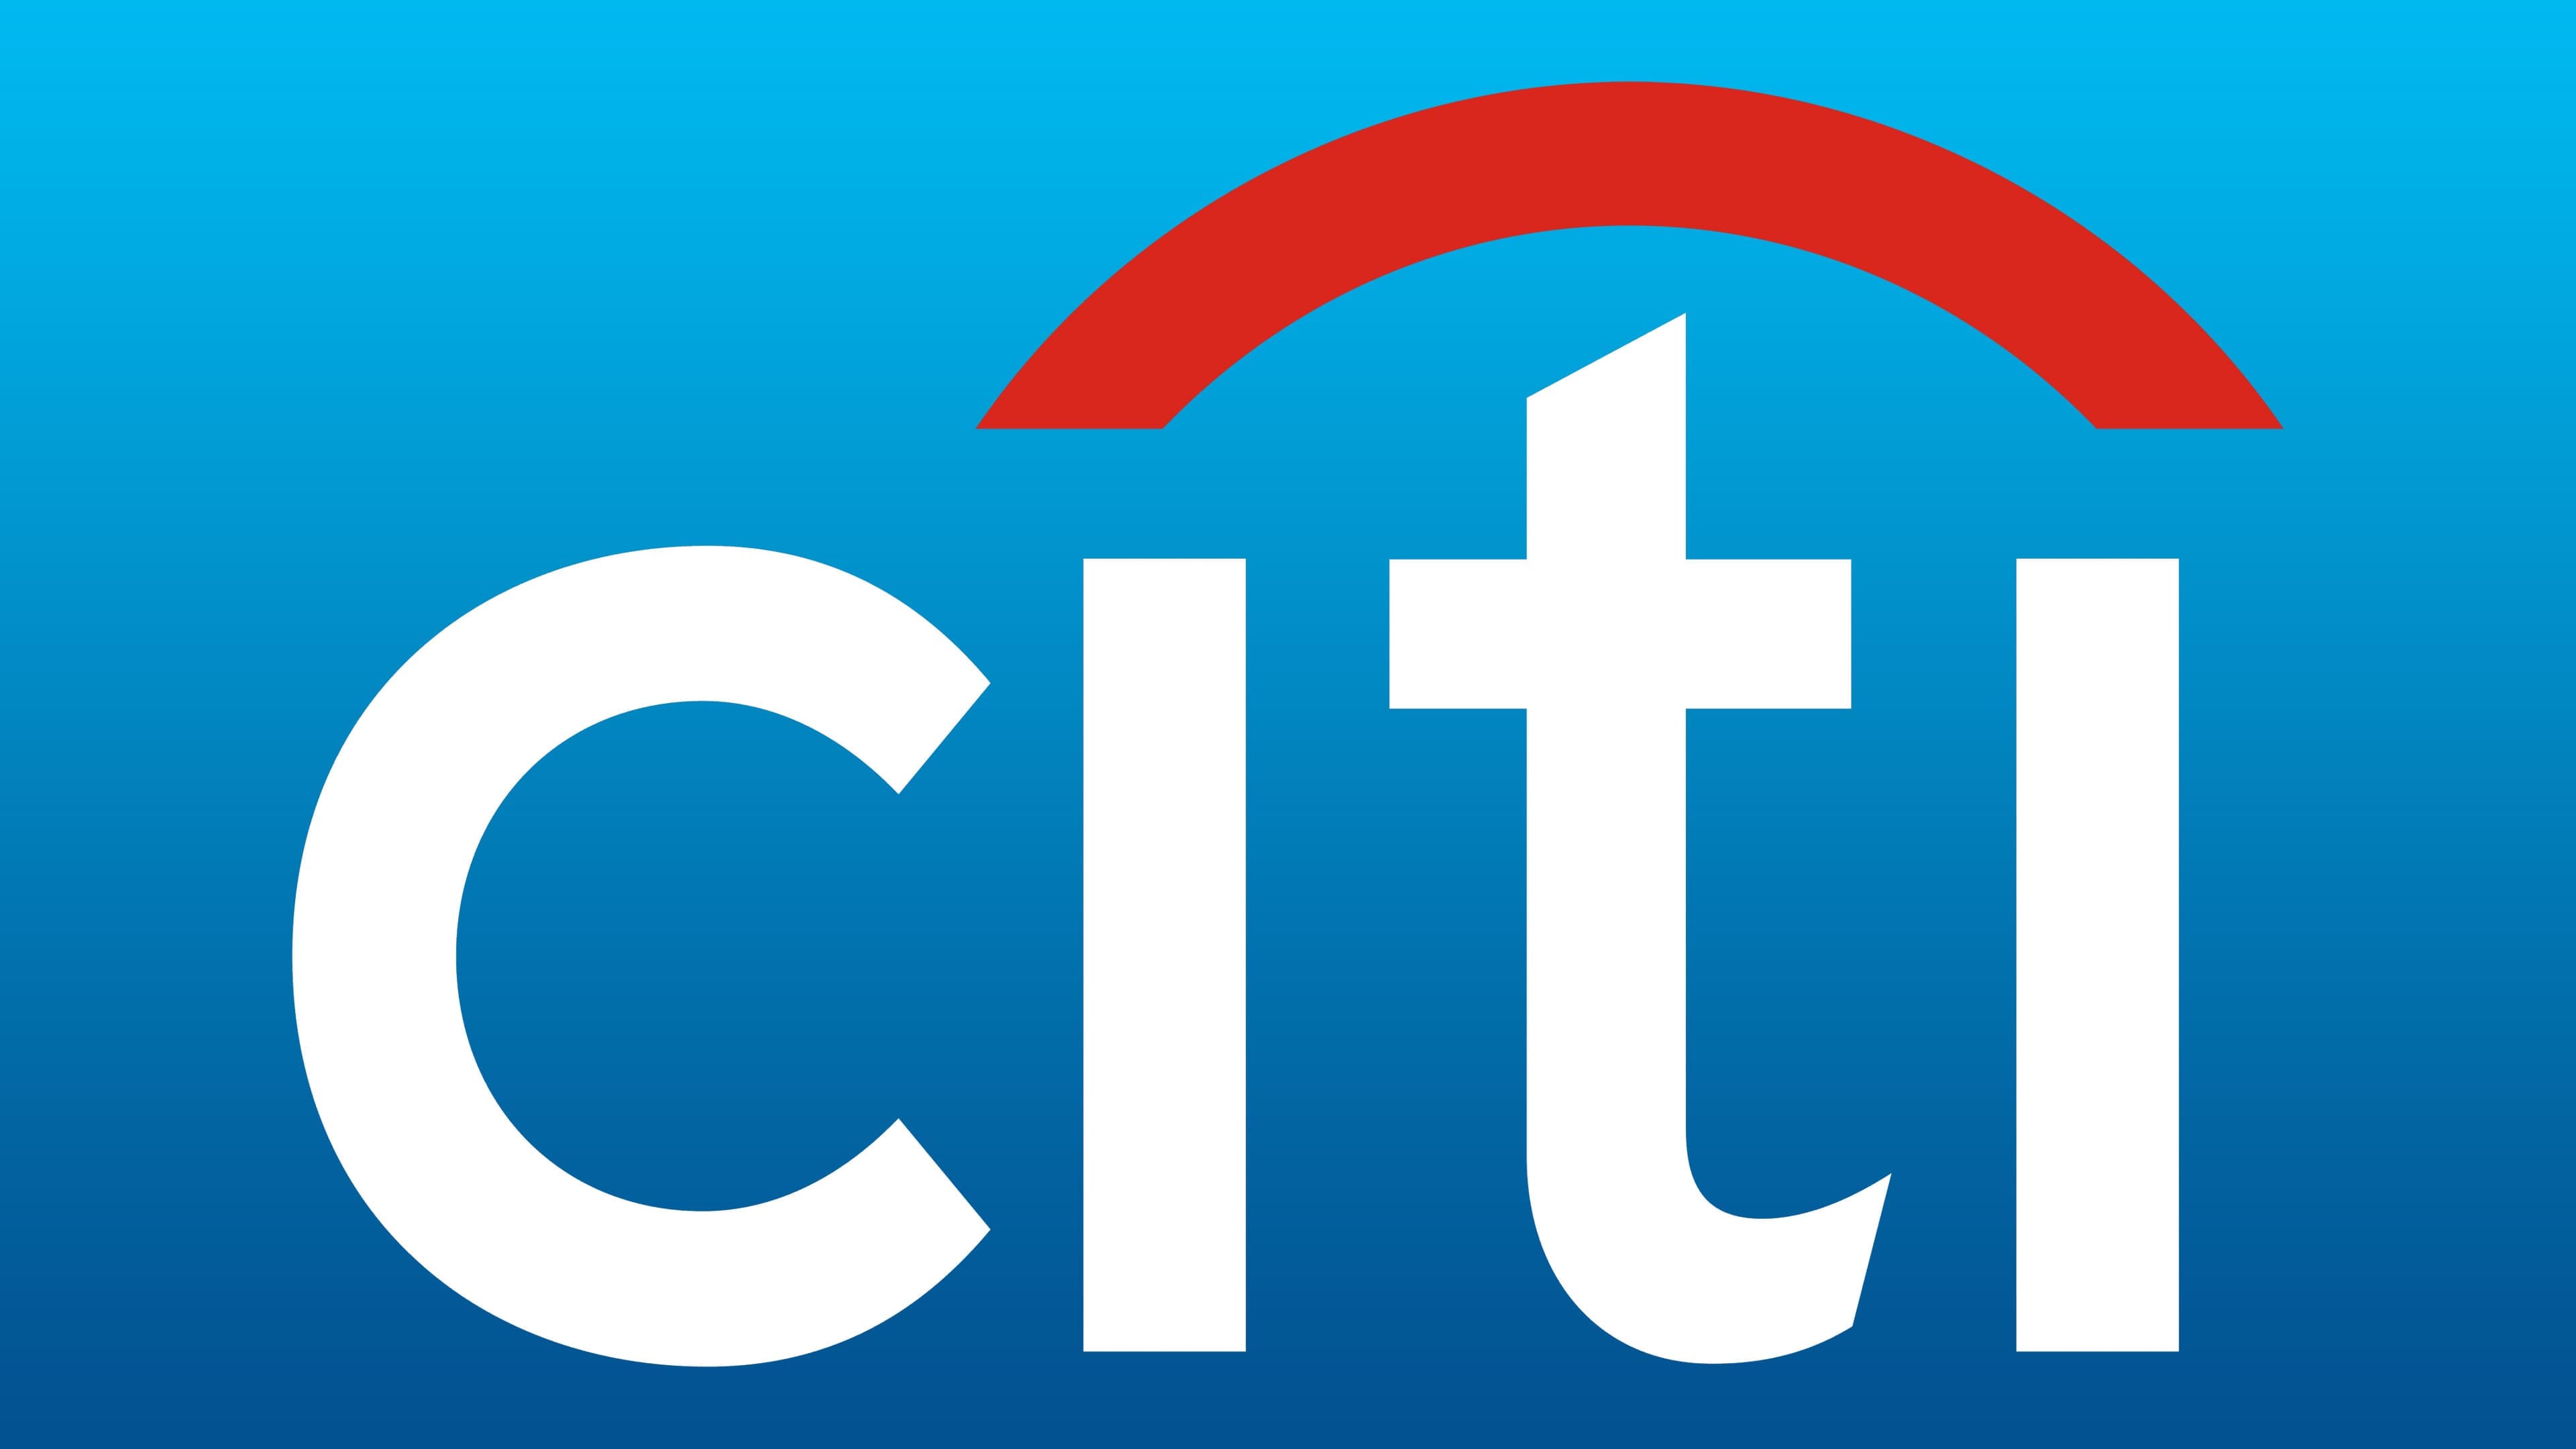 Λογότυπο Citigroup , σύμβολο, νόημα, ιστορία, PNG, μάρκα